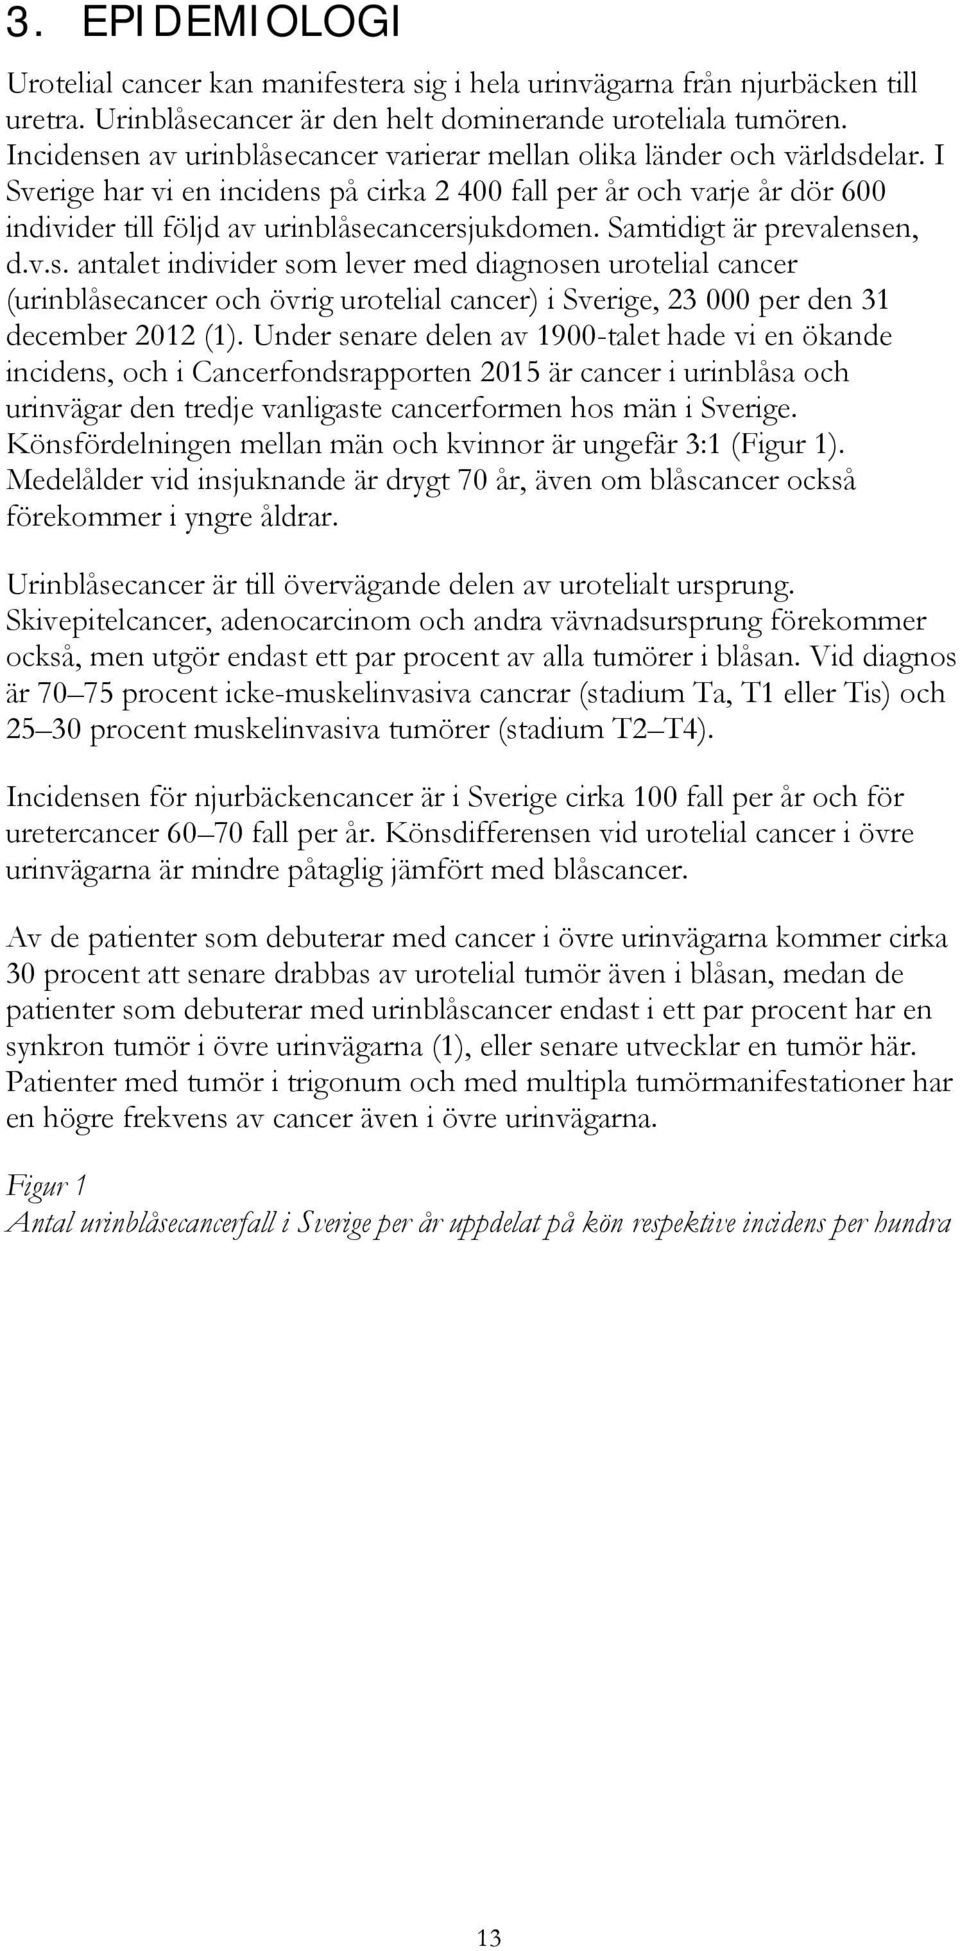 I Sverige har vi en incidens på cirka 2 400 fall per år och varje år dör 600 individer till följd av urinblåsecancersjukdomen. Samtidigt är prevalensen, d.v.s. antalet individer som lever med diagnosen urotelial cancer (urinblåsecancer och övrig urotelial cancer) i Sverige, 23 000 per den 31 december 2012 (1).